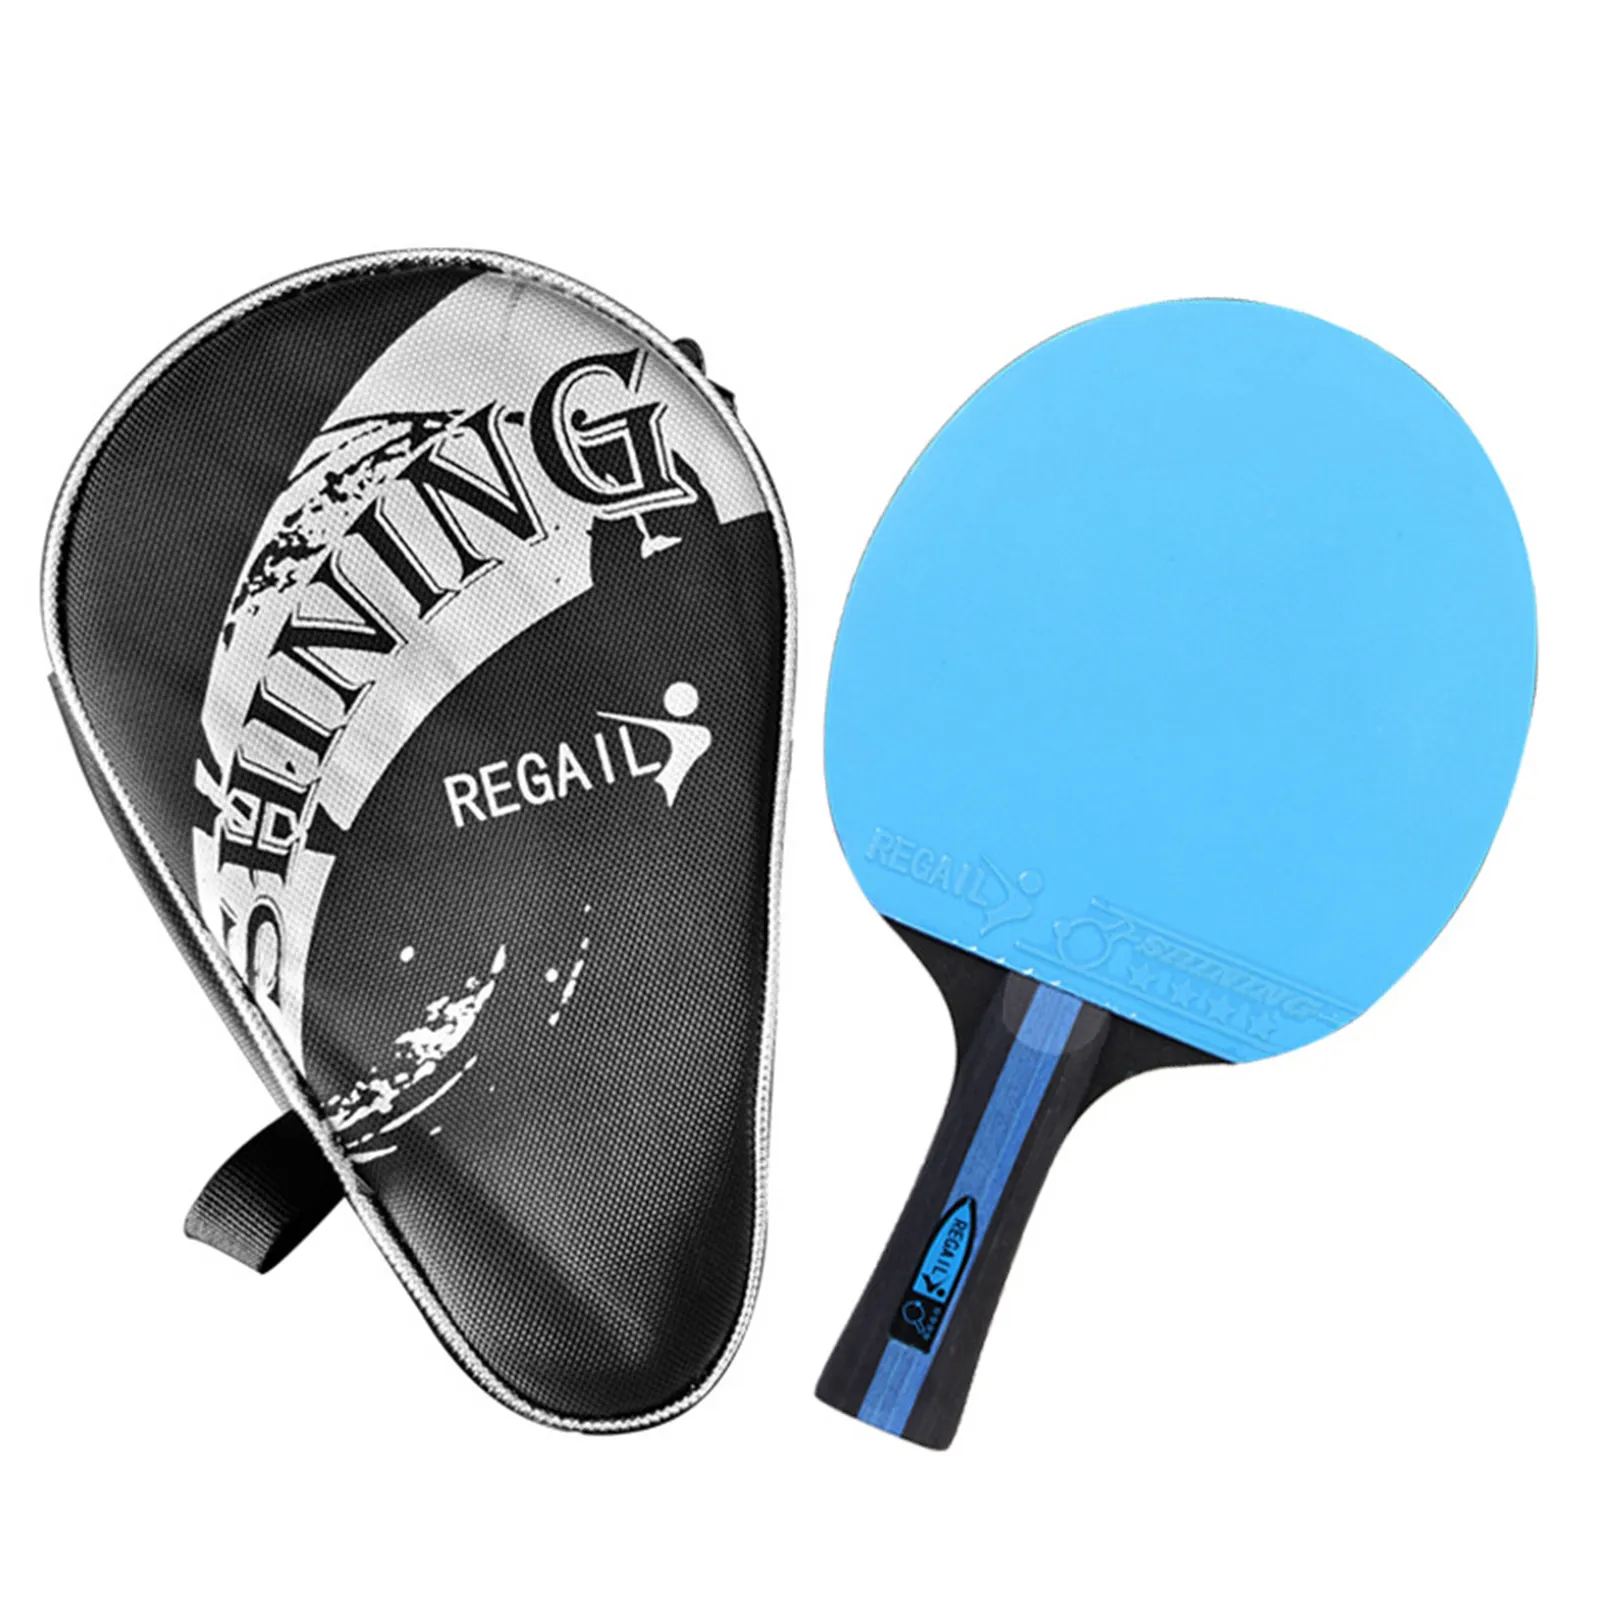 Raqueta de tenis de mesa, raqueta de ping pong, juego, deporte